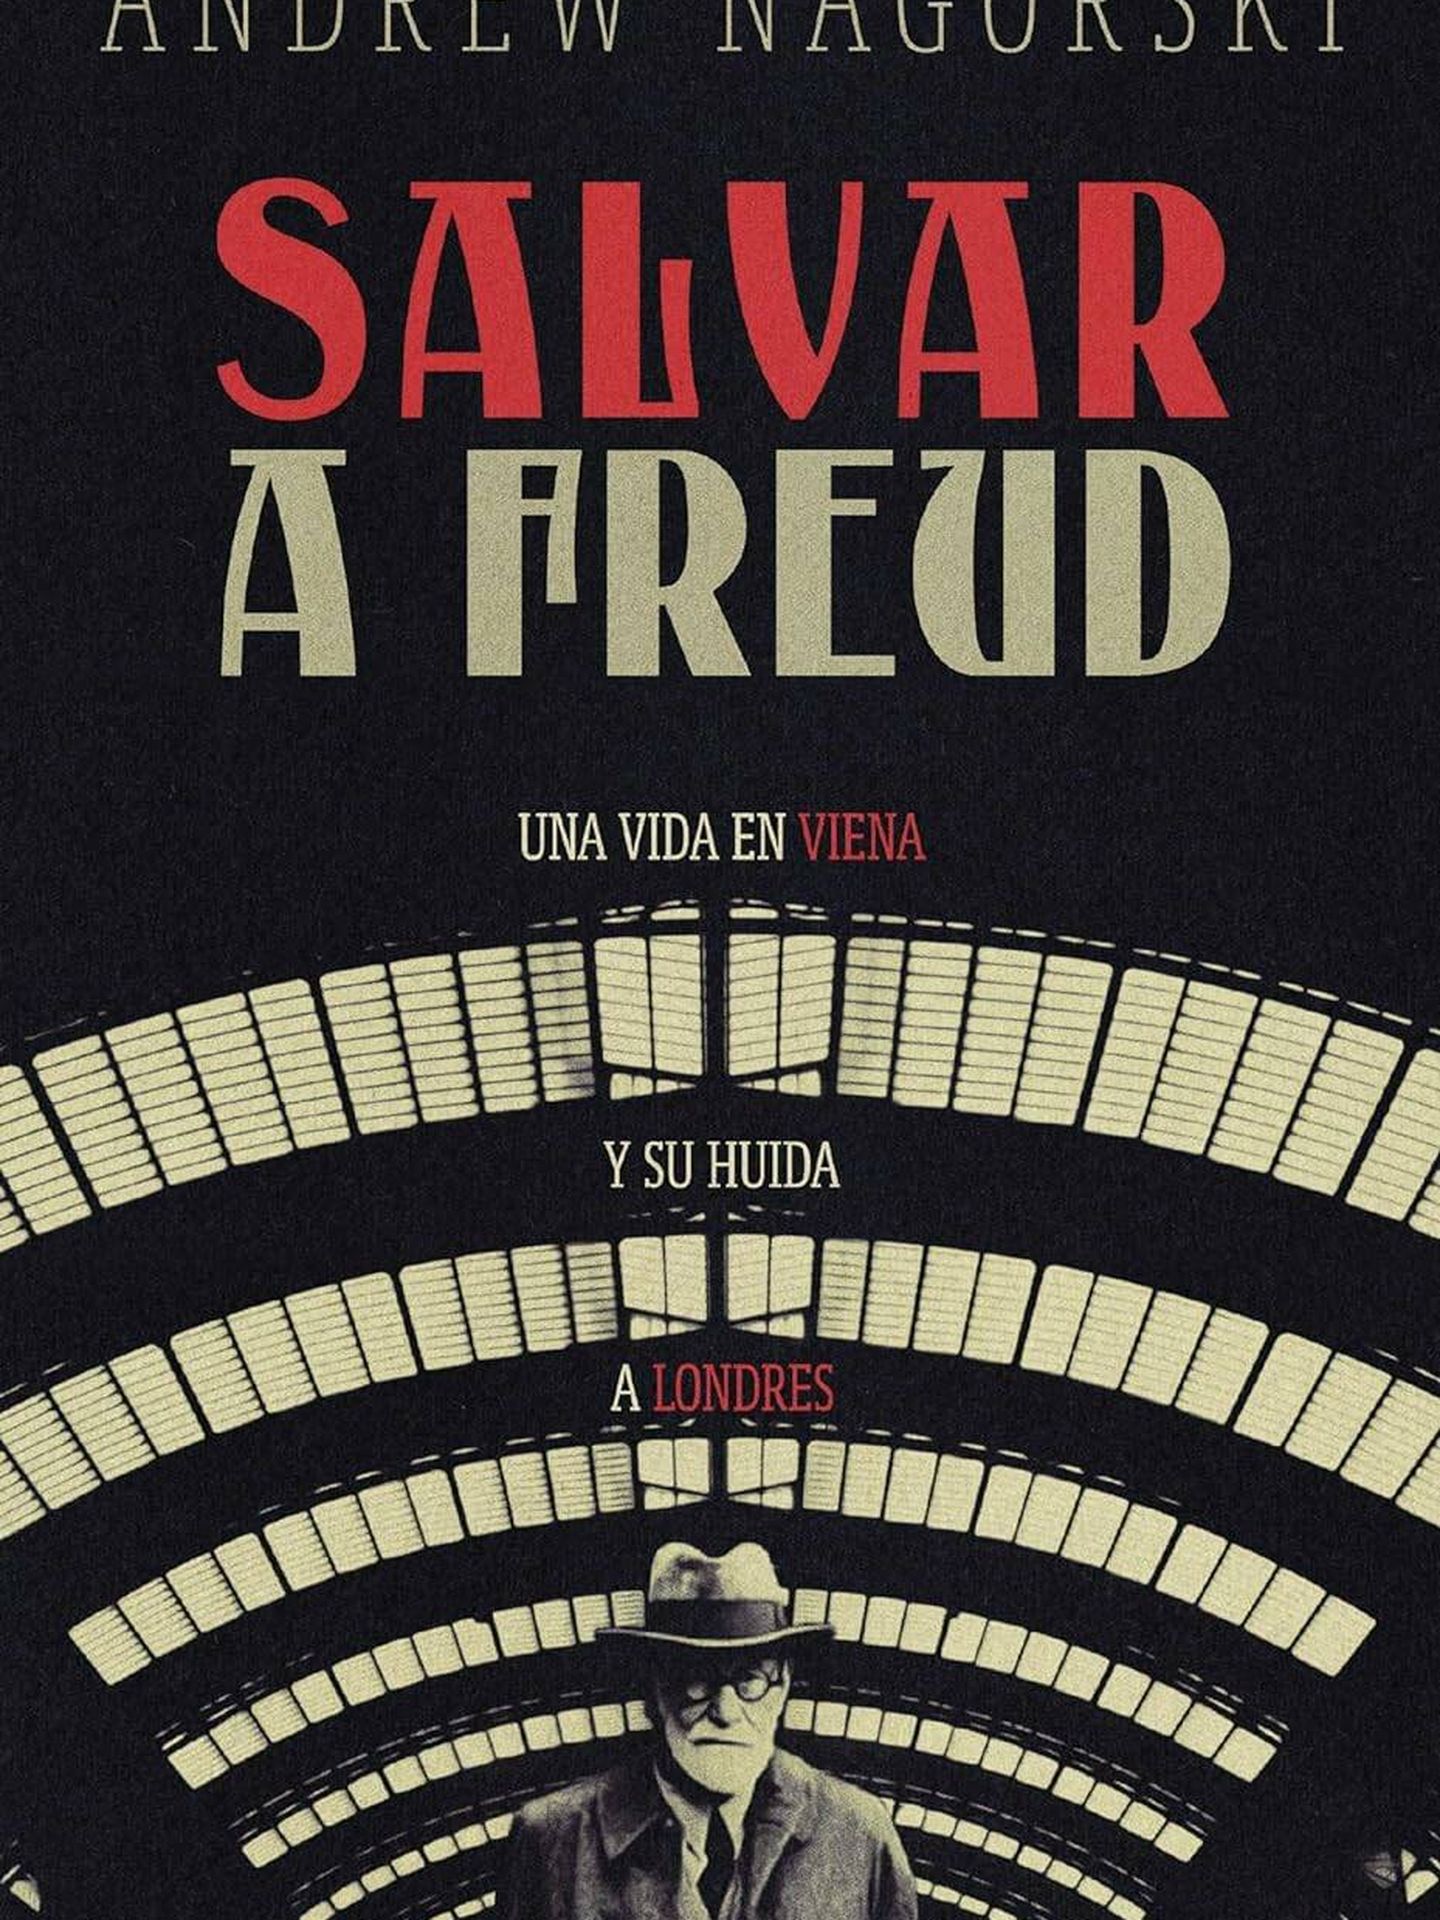 'Salvar a Freud', de Andrew Nagorski 